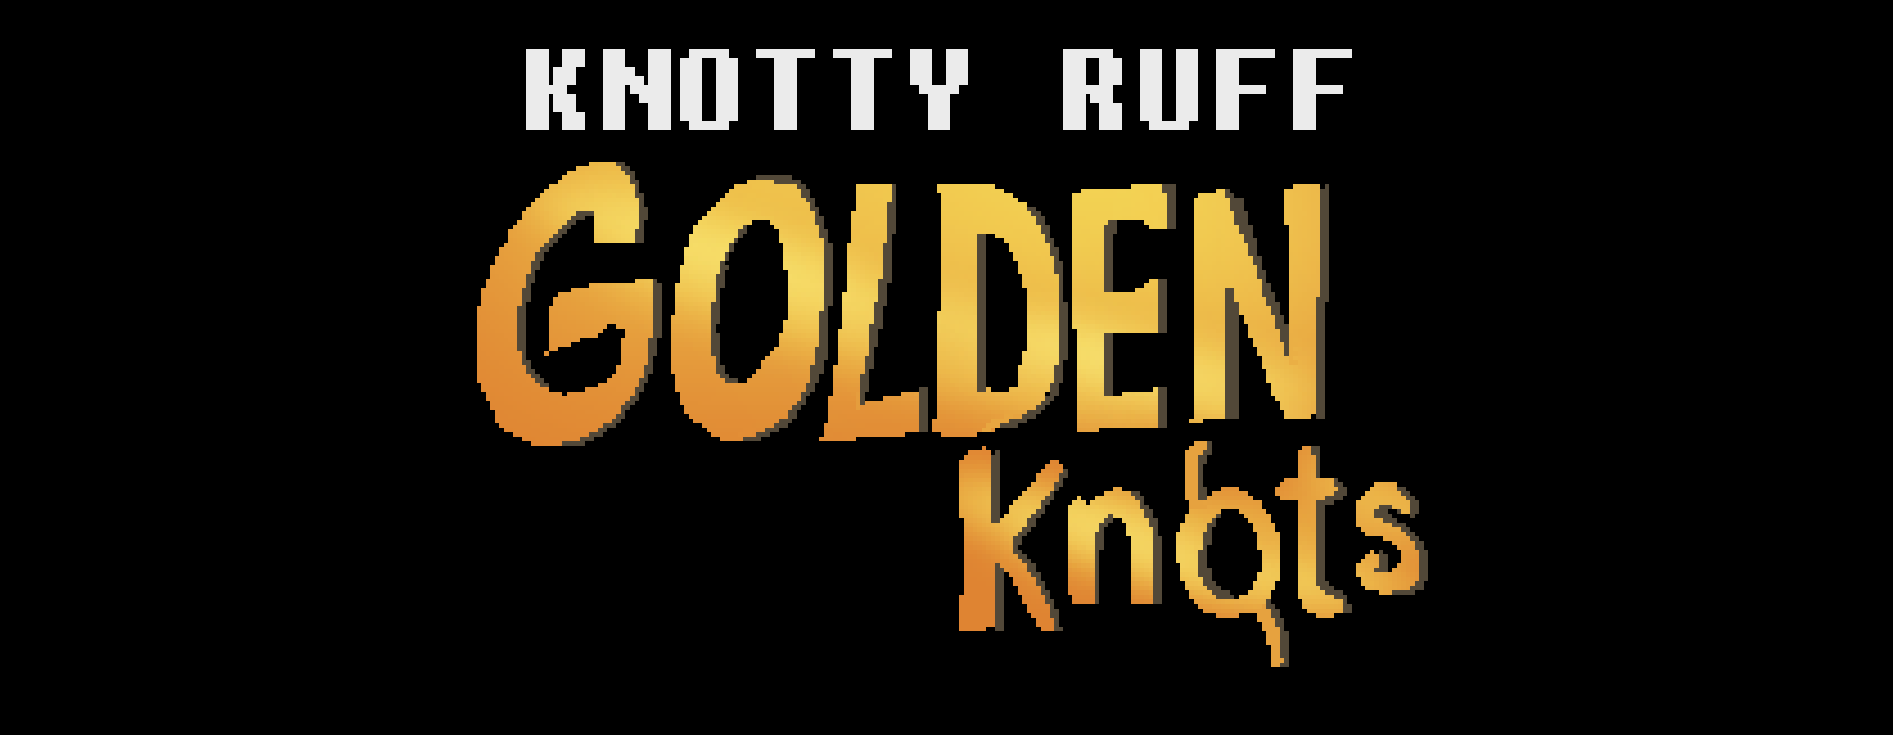 Knotty Ruff: Golden Knots poster